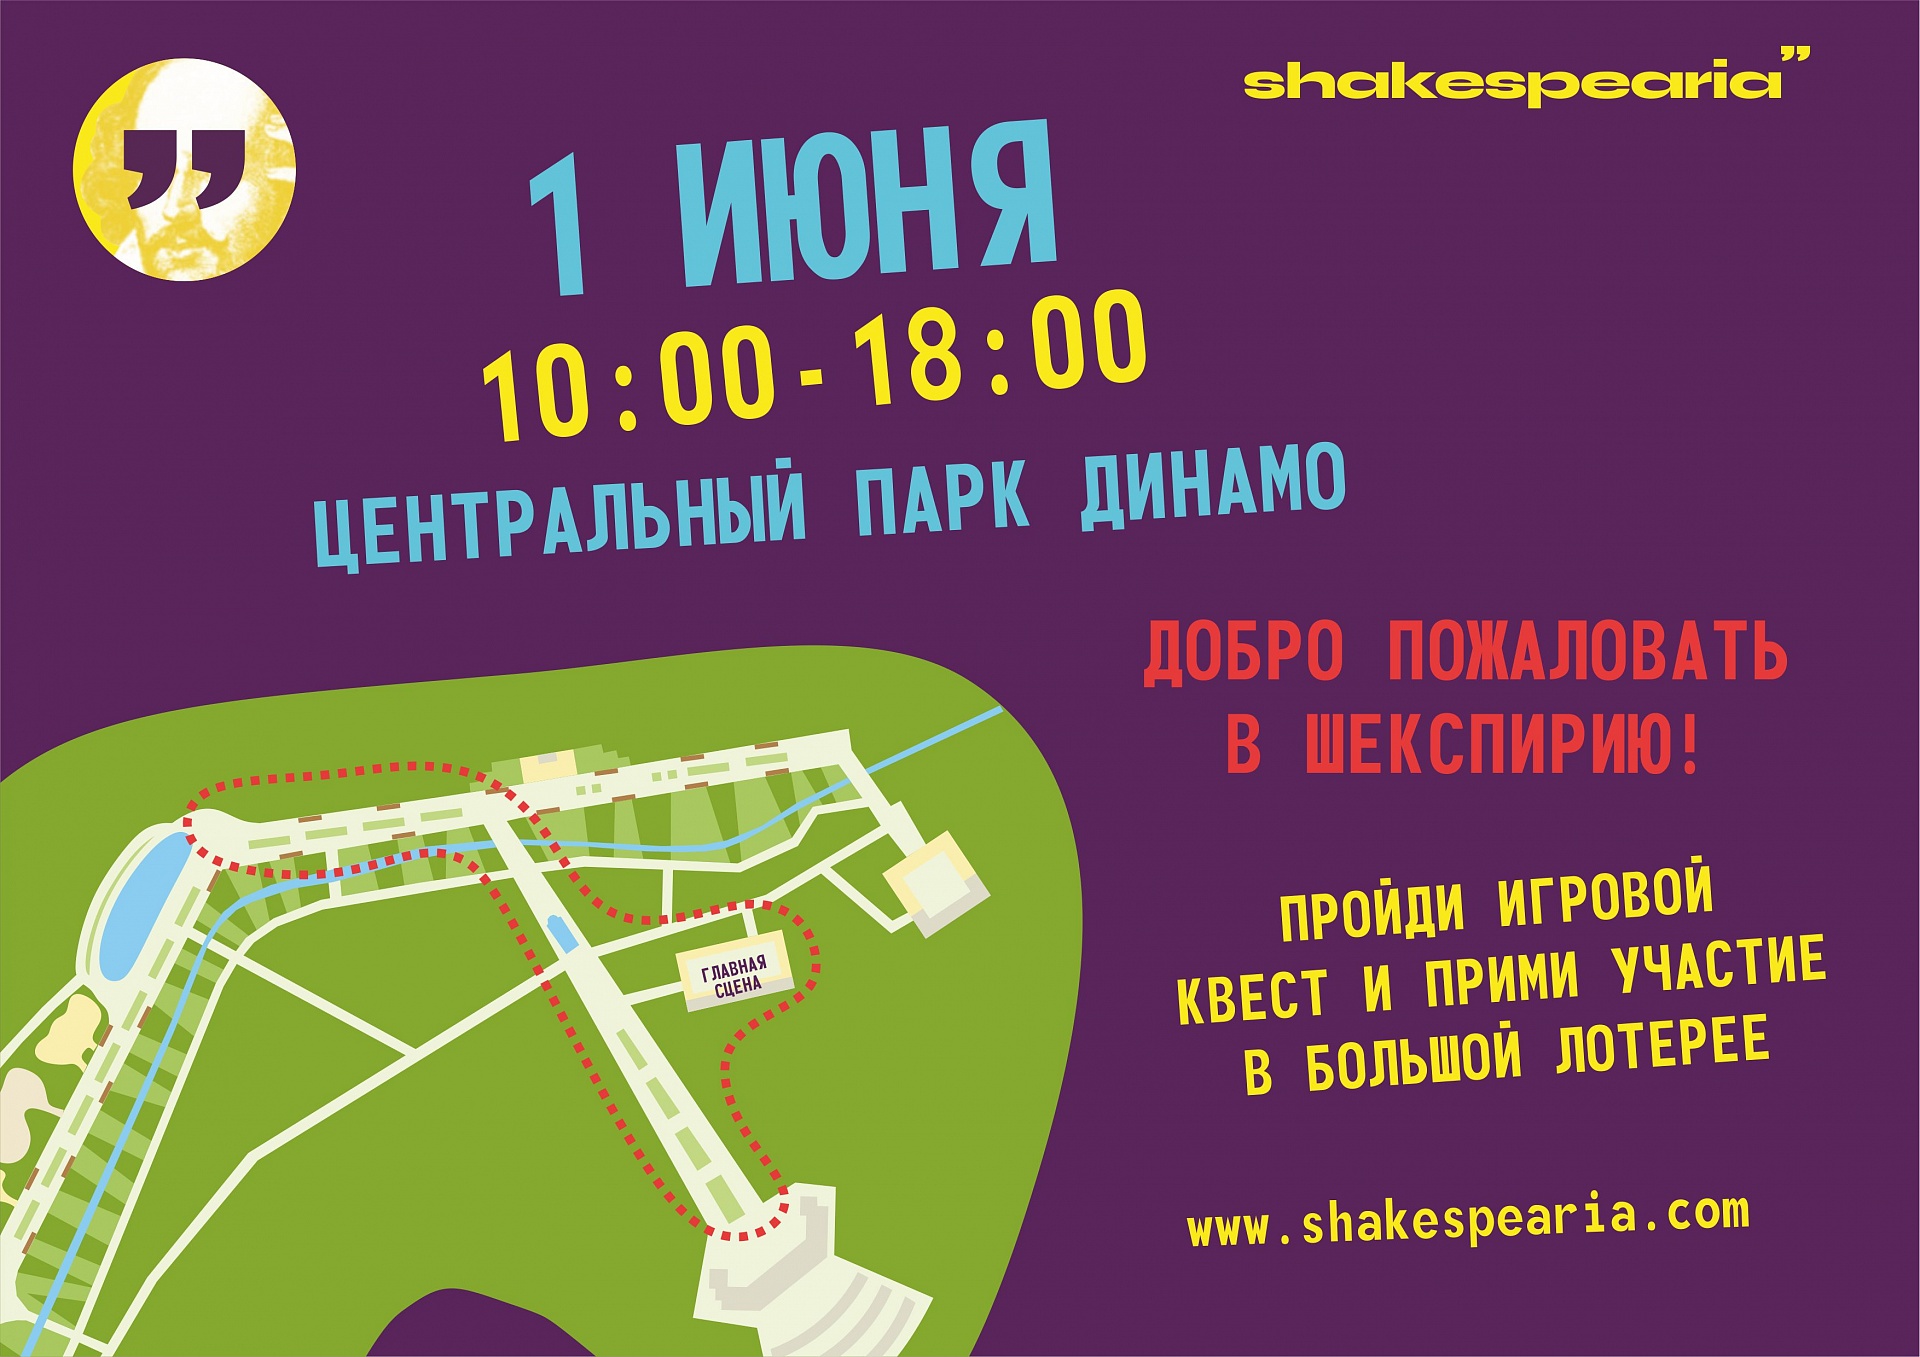 1 июня Фестиваль "Шекспирия" в Центральном парке